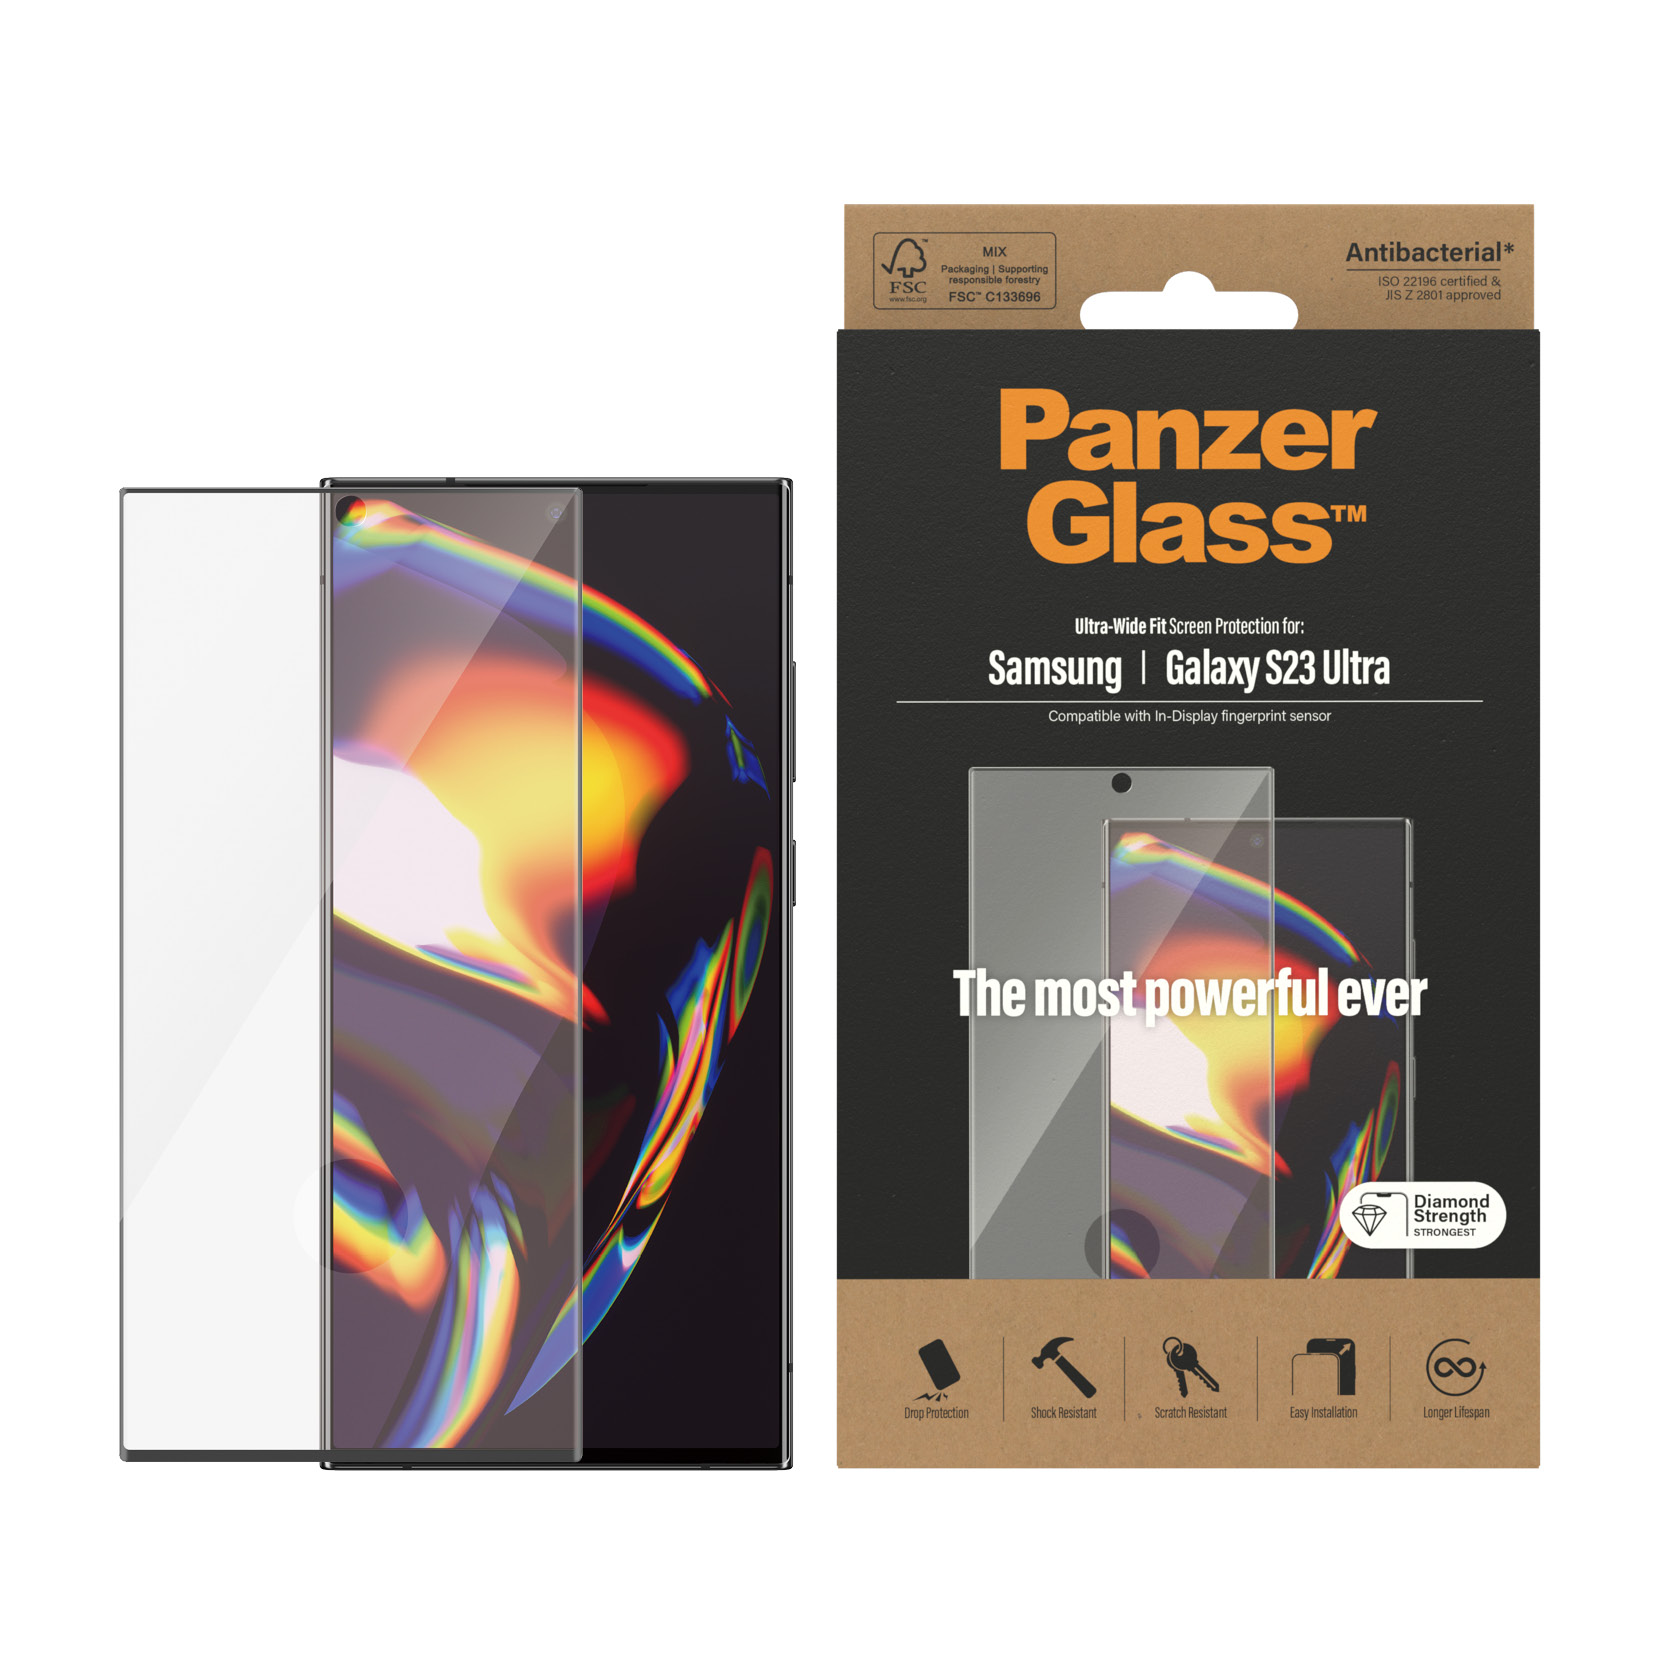 PanzerGlass szko hartowane Ultra-Wide Fit Samsung Galaxy S23 Ultra / 2